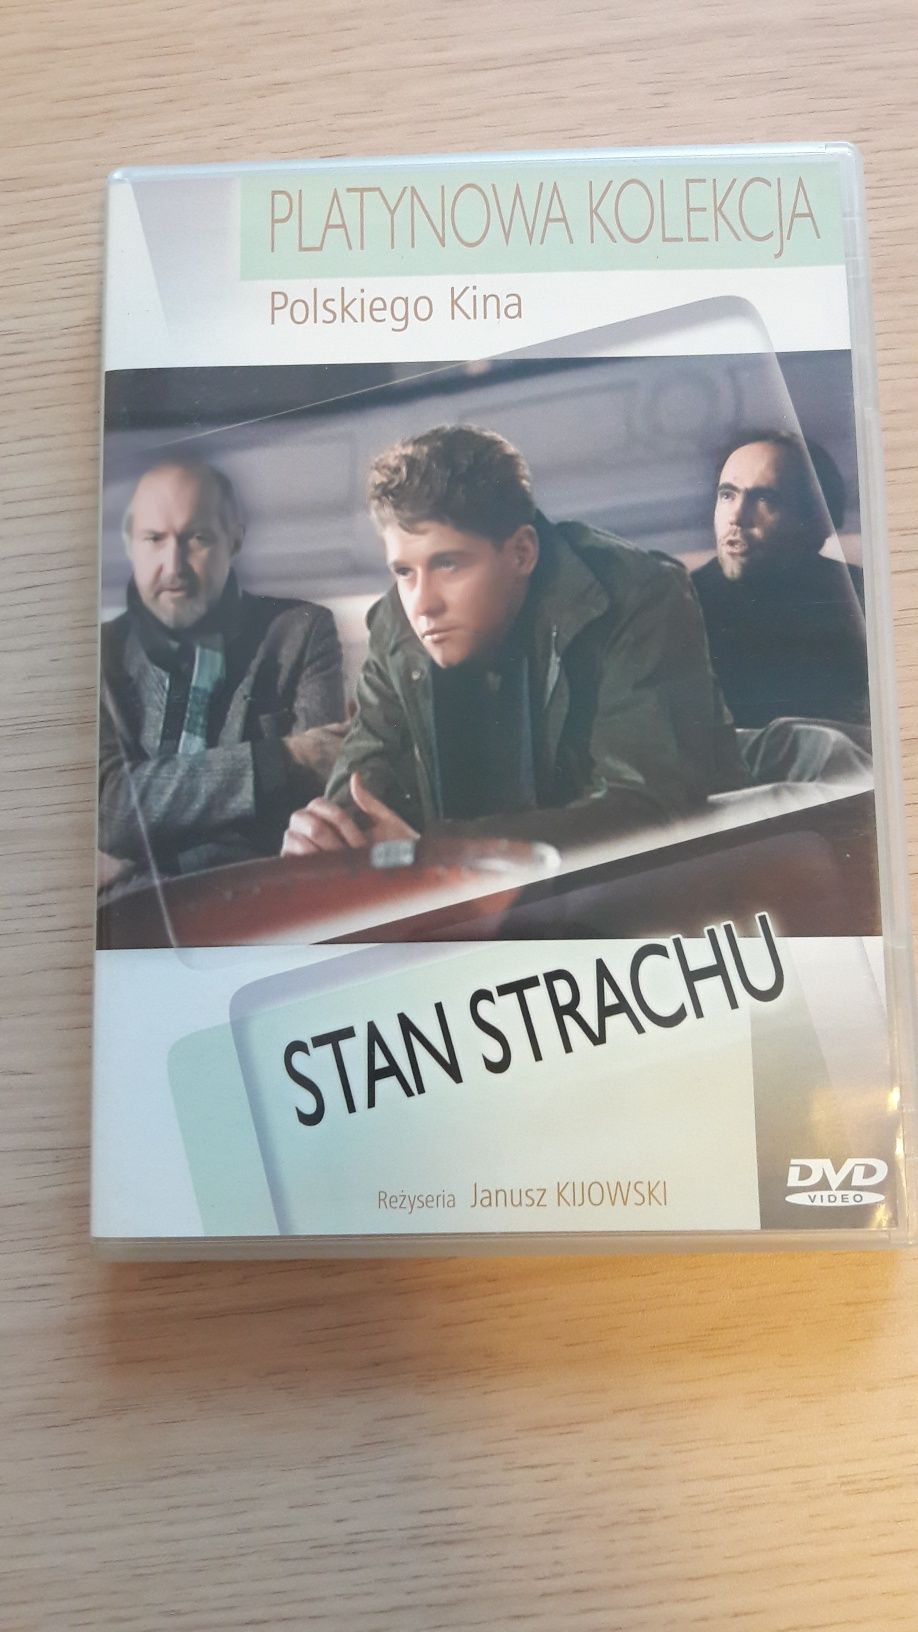 Stan strachu film DVD Kijowski Platynowa kolekcja polskiego kina